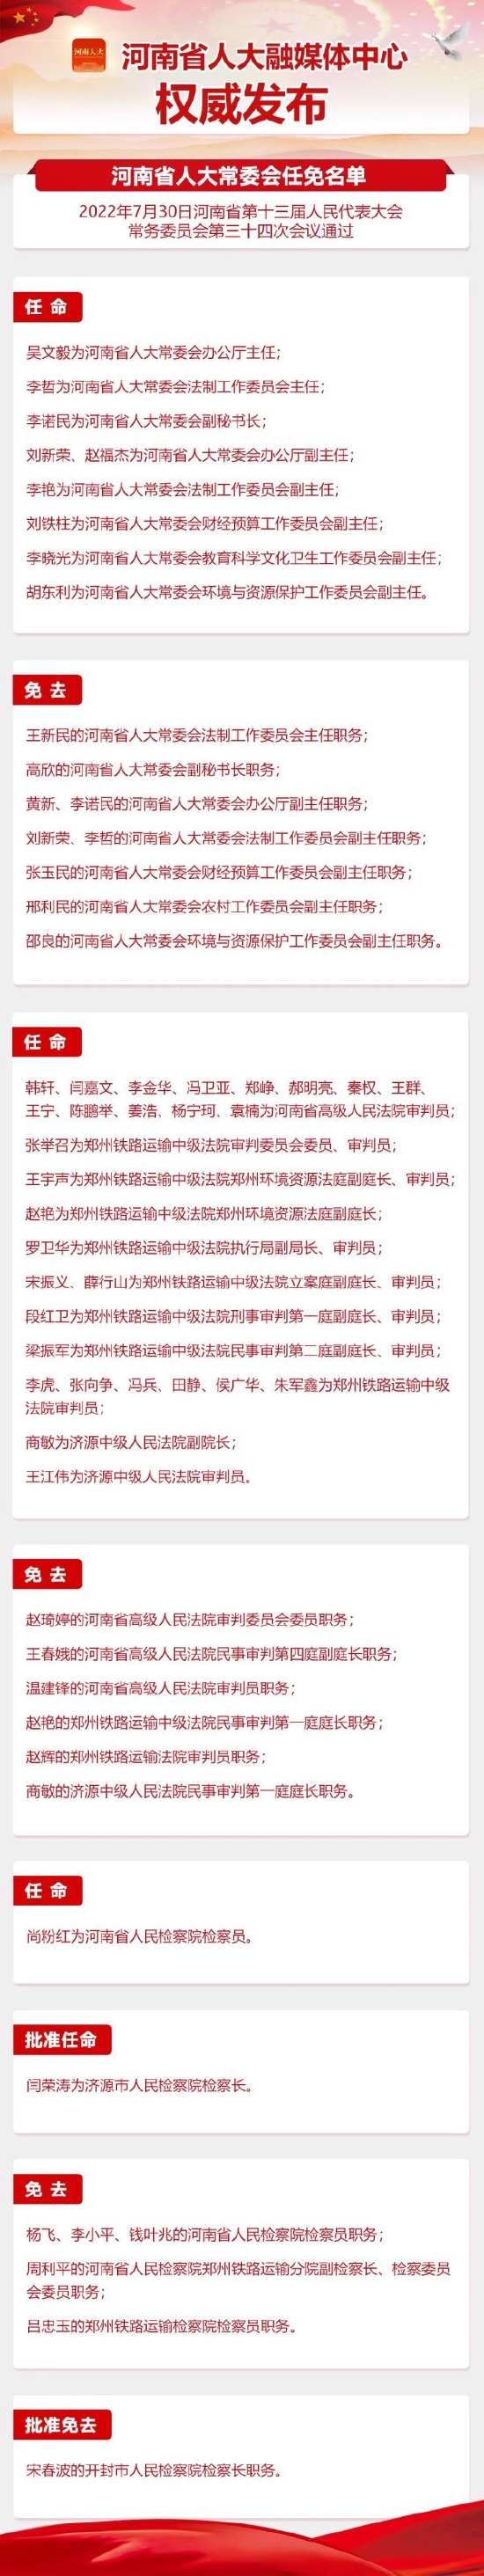 河南省人大常委会最新任免名单发布